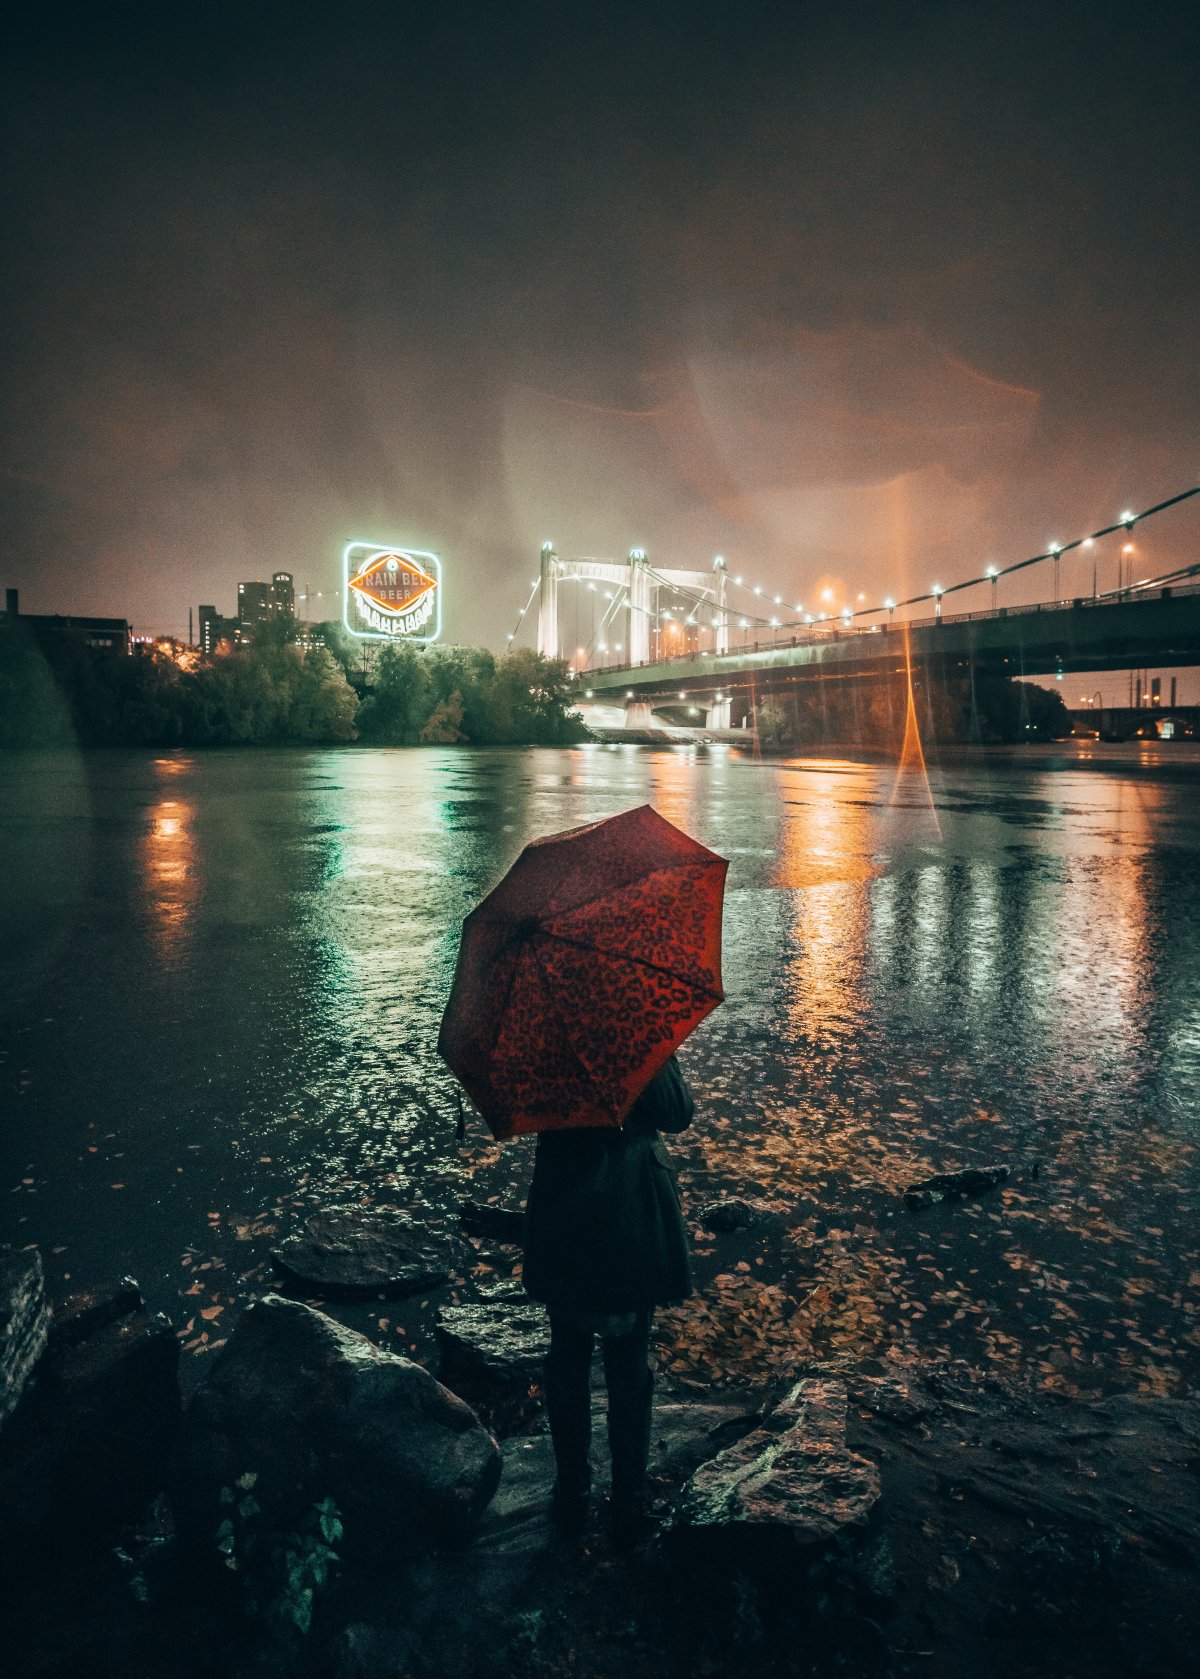 雨中撑伞孤独图片